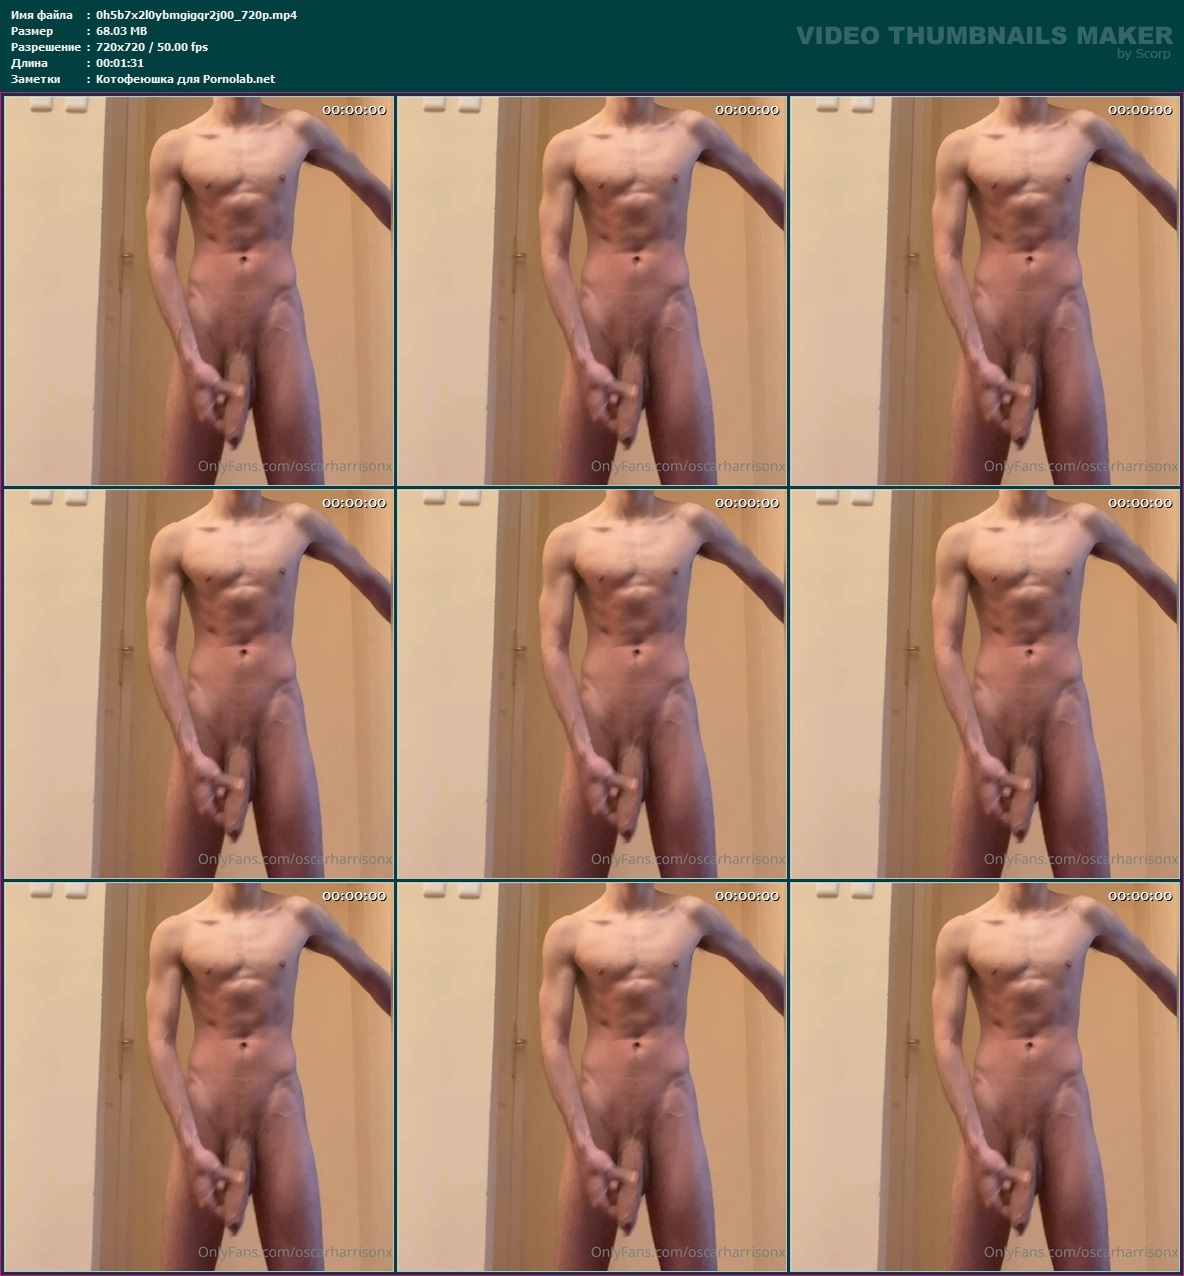 Oscar @oscarwillows nude pics